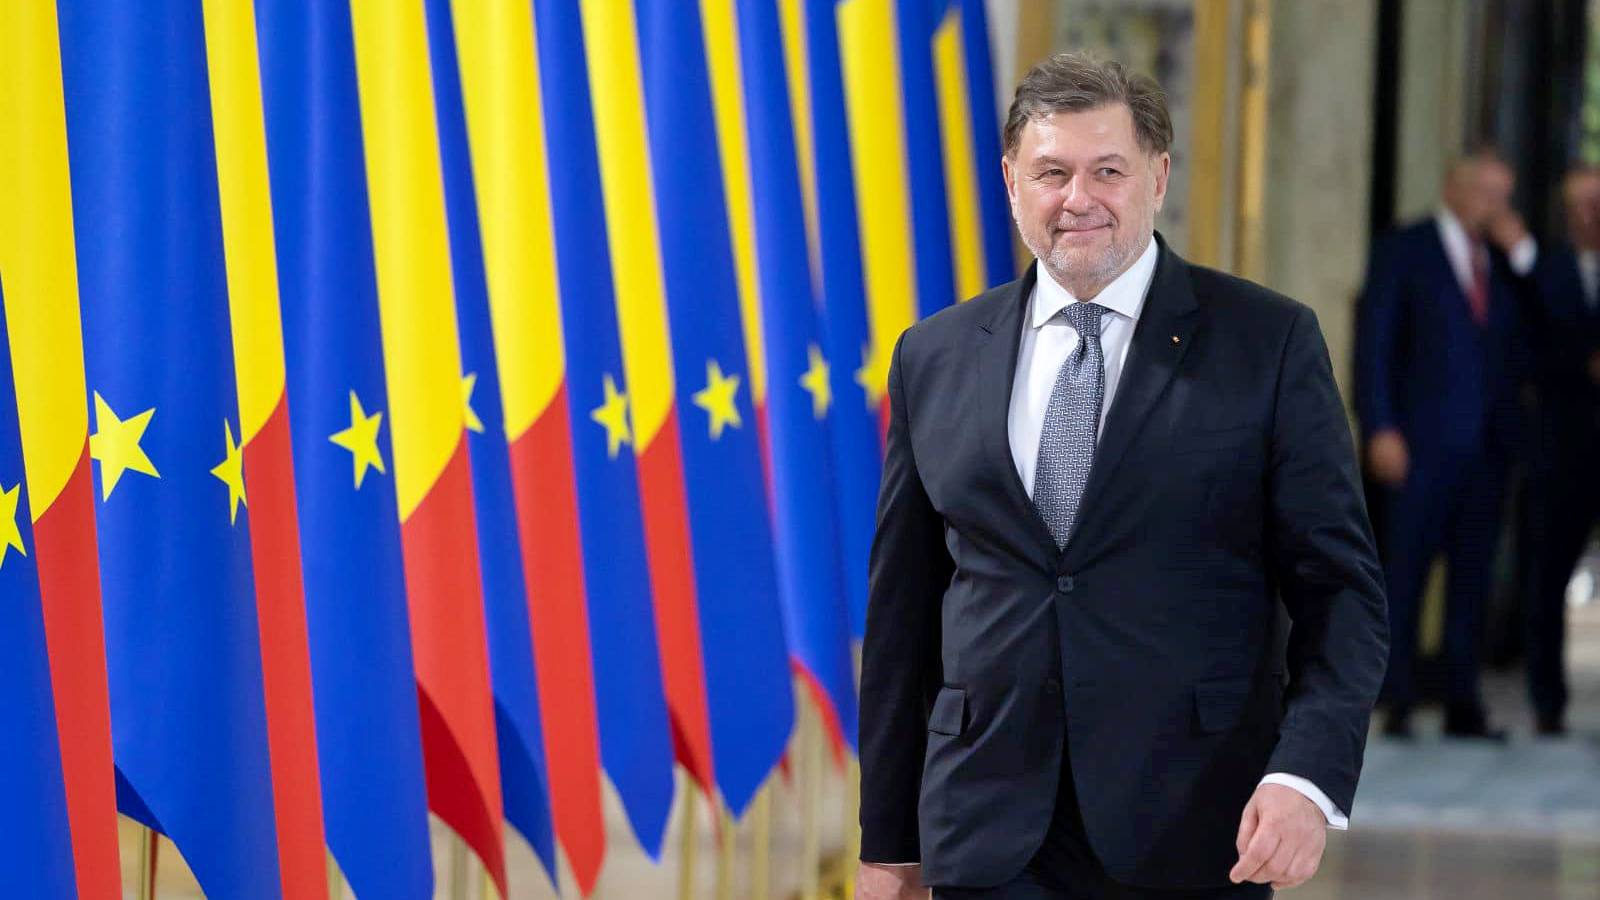 Minister van Volksgezondheid Nieuwe officiële regels LAATSTE MOMENT opgelegd aan heel Roemenië